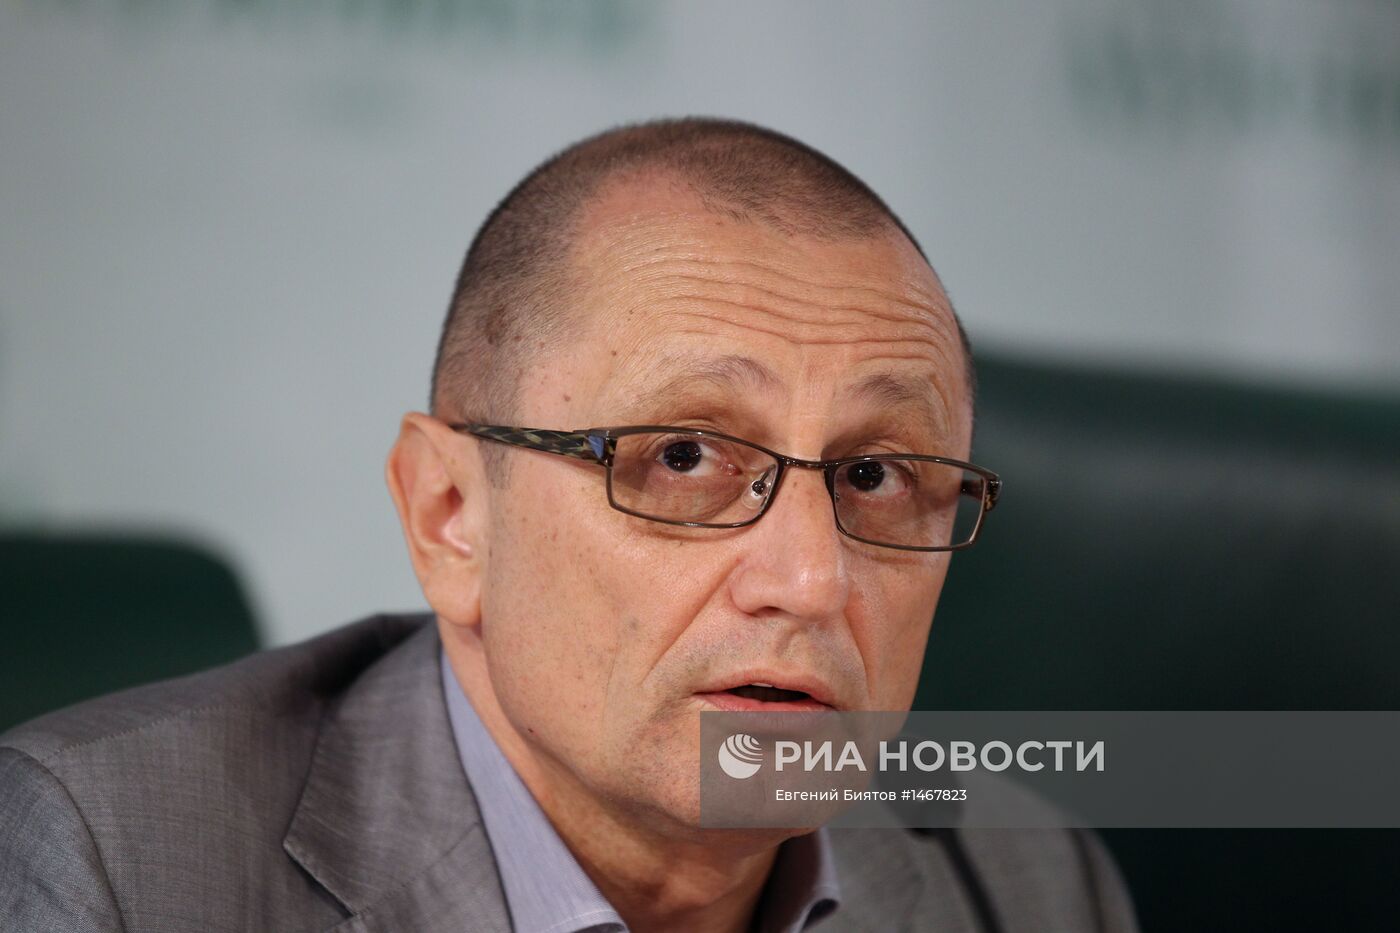 Пресс-конференция руководства Российской футбольной Премьер-Лиги